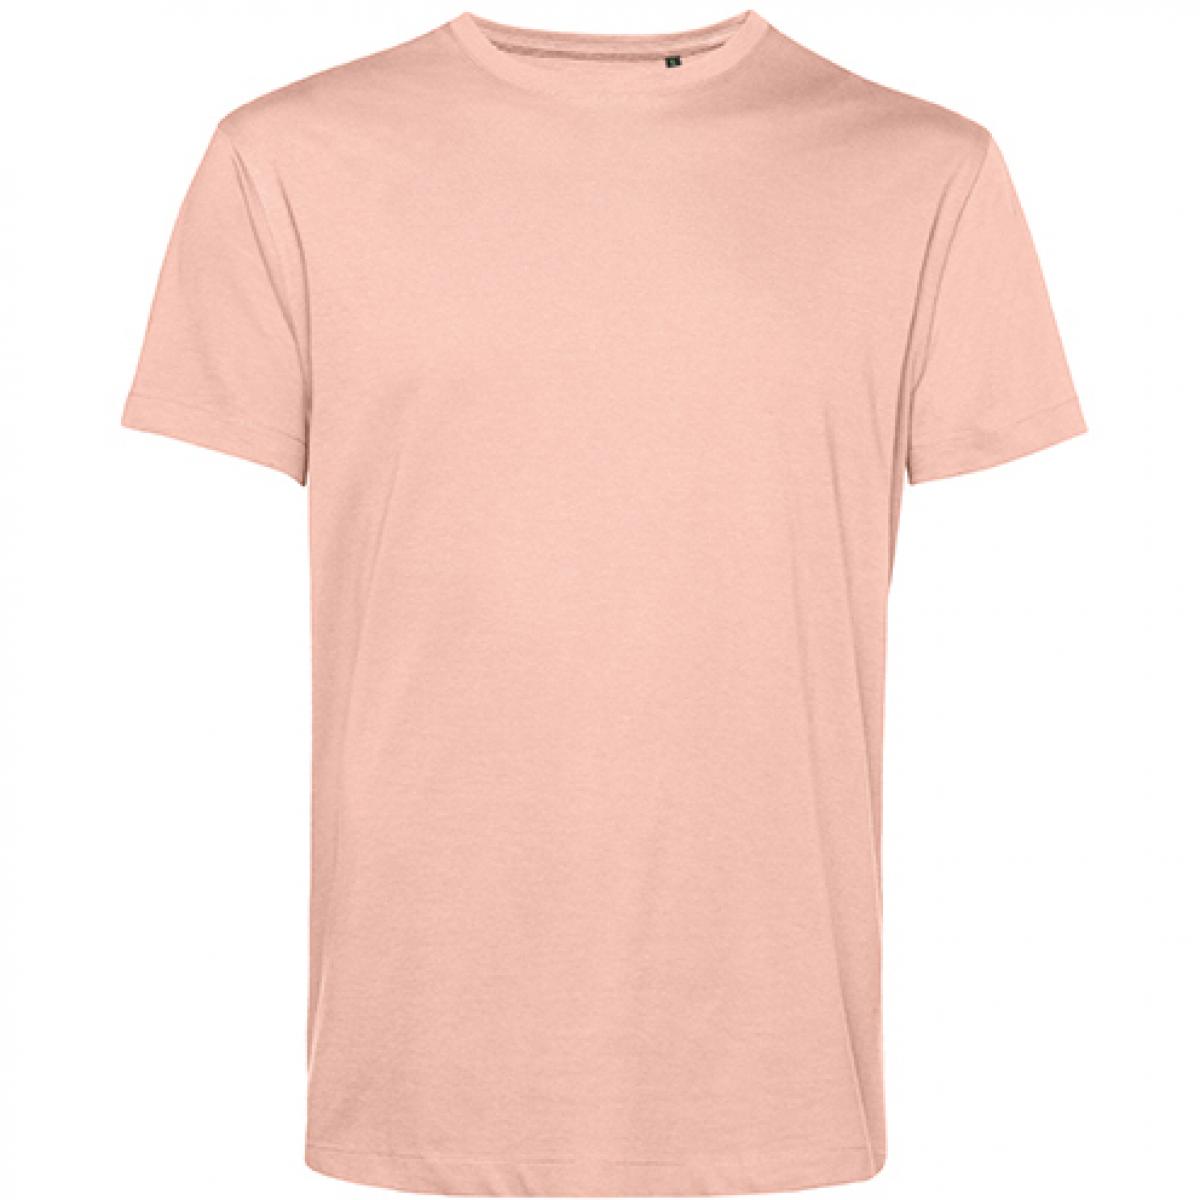 Hersteller: B&C Herstellernummer: TU01B Artikelbezeichnung: #Organic E150 T-Shirt - 100 % sanforisierte Bio-Baumwolle Farbe: Soft Rose